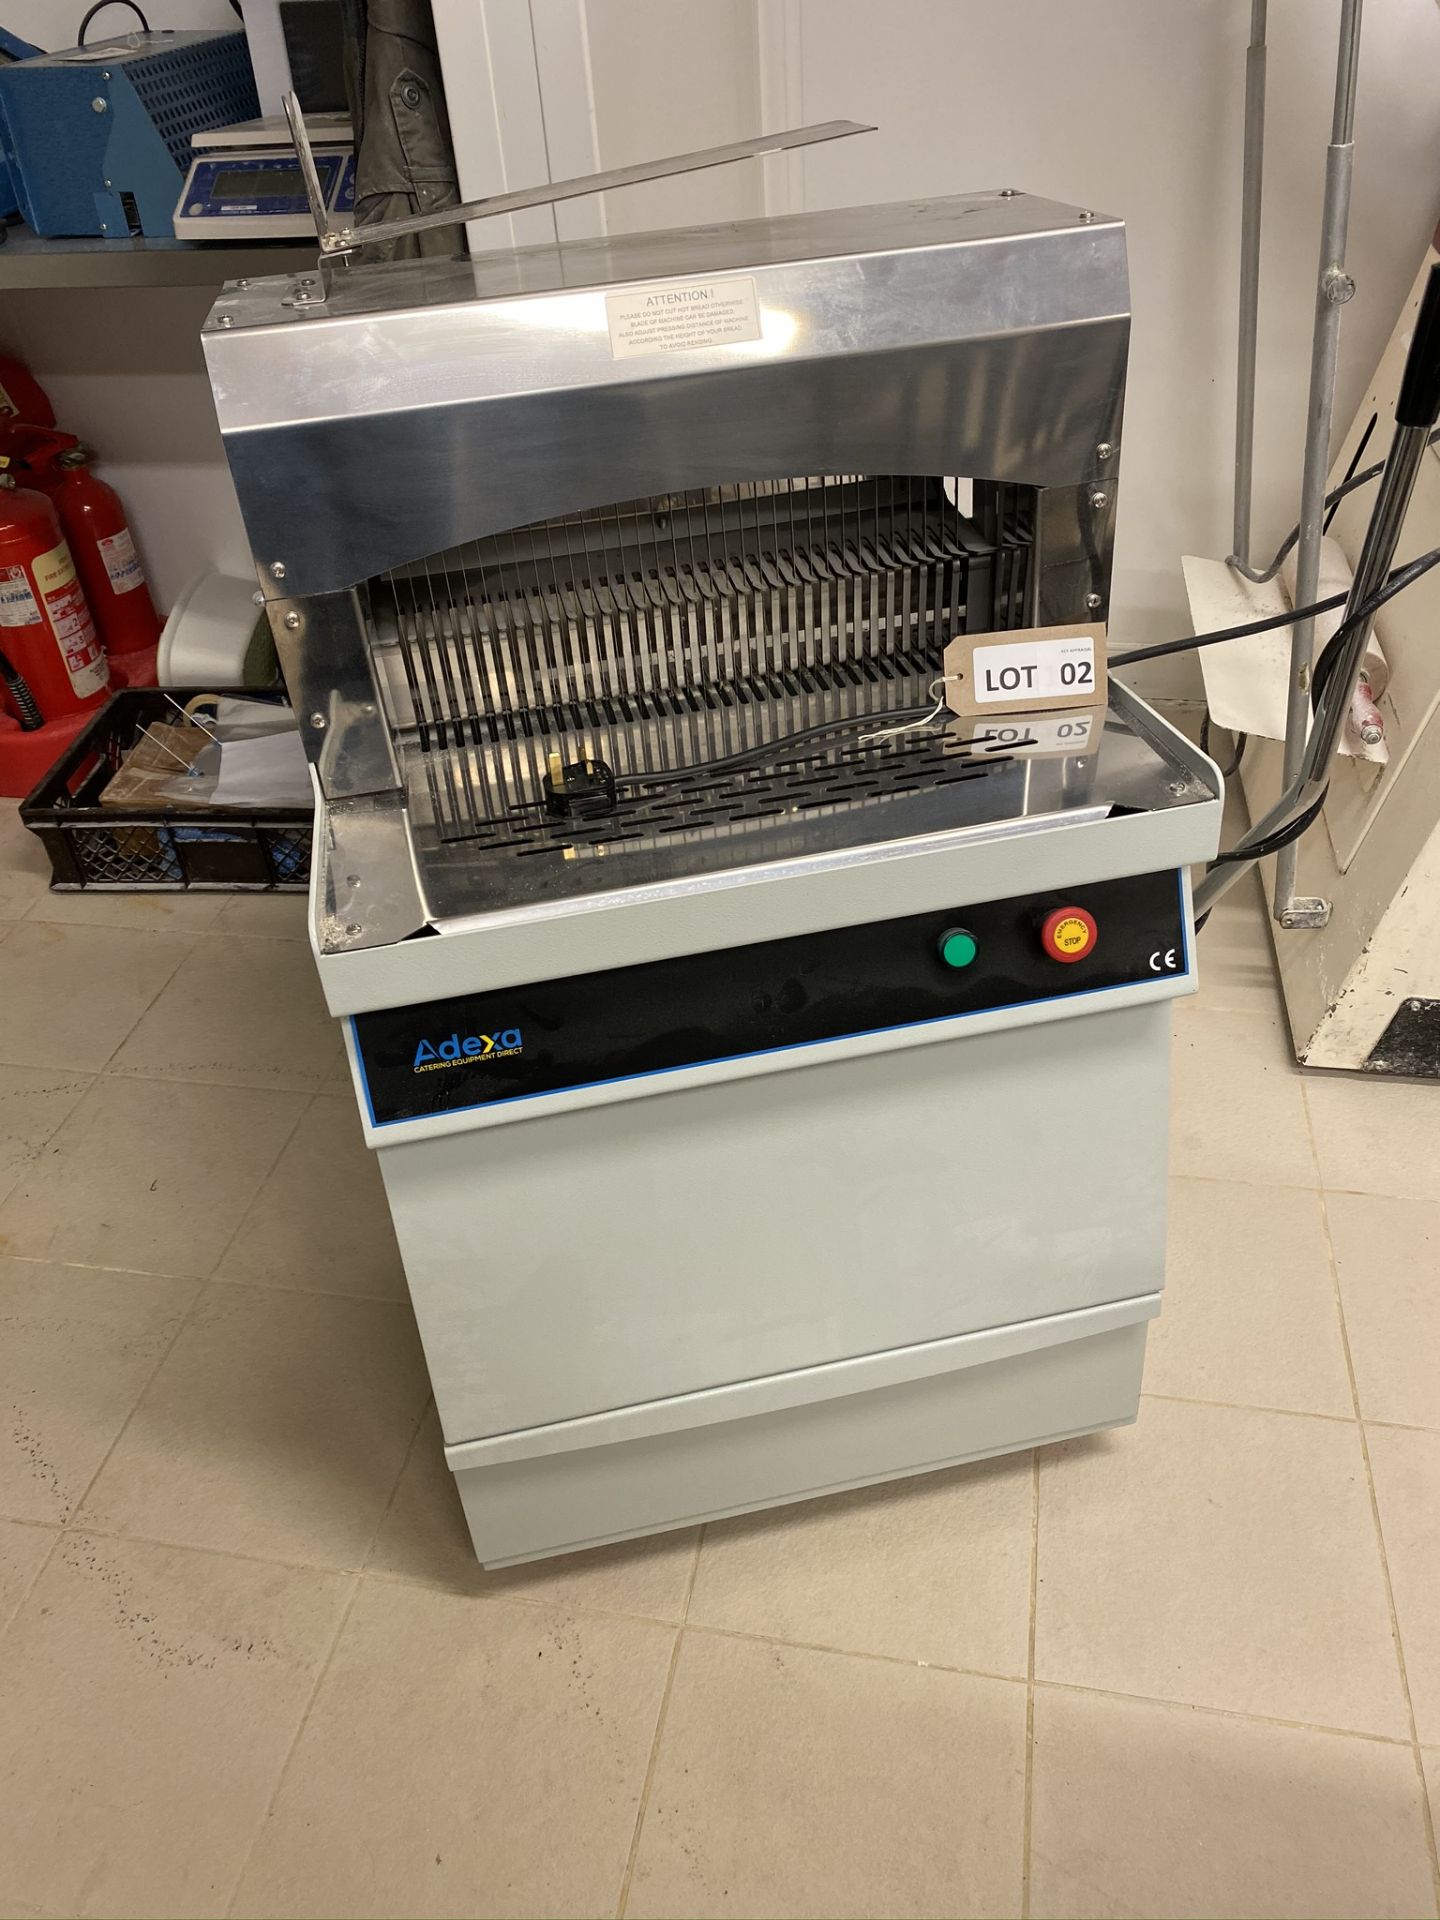 Adexa BSC-13 bread slicer, Serial No: 1253 (2018)